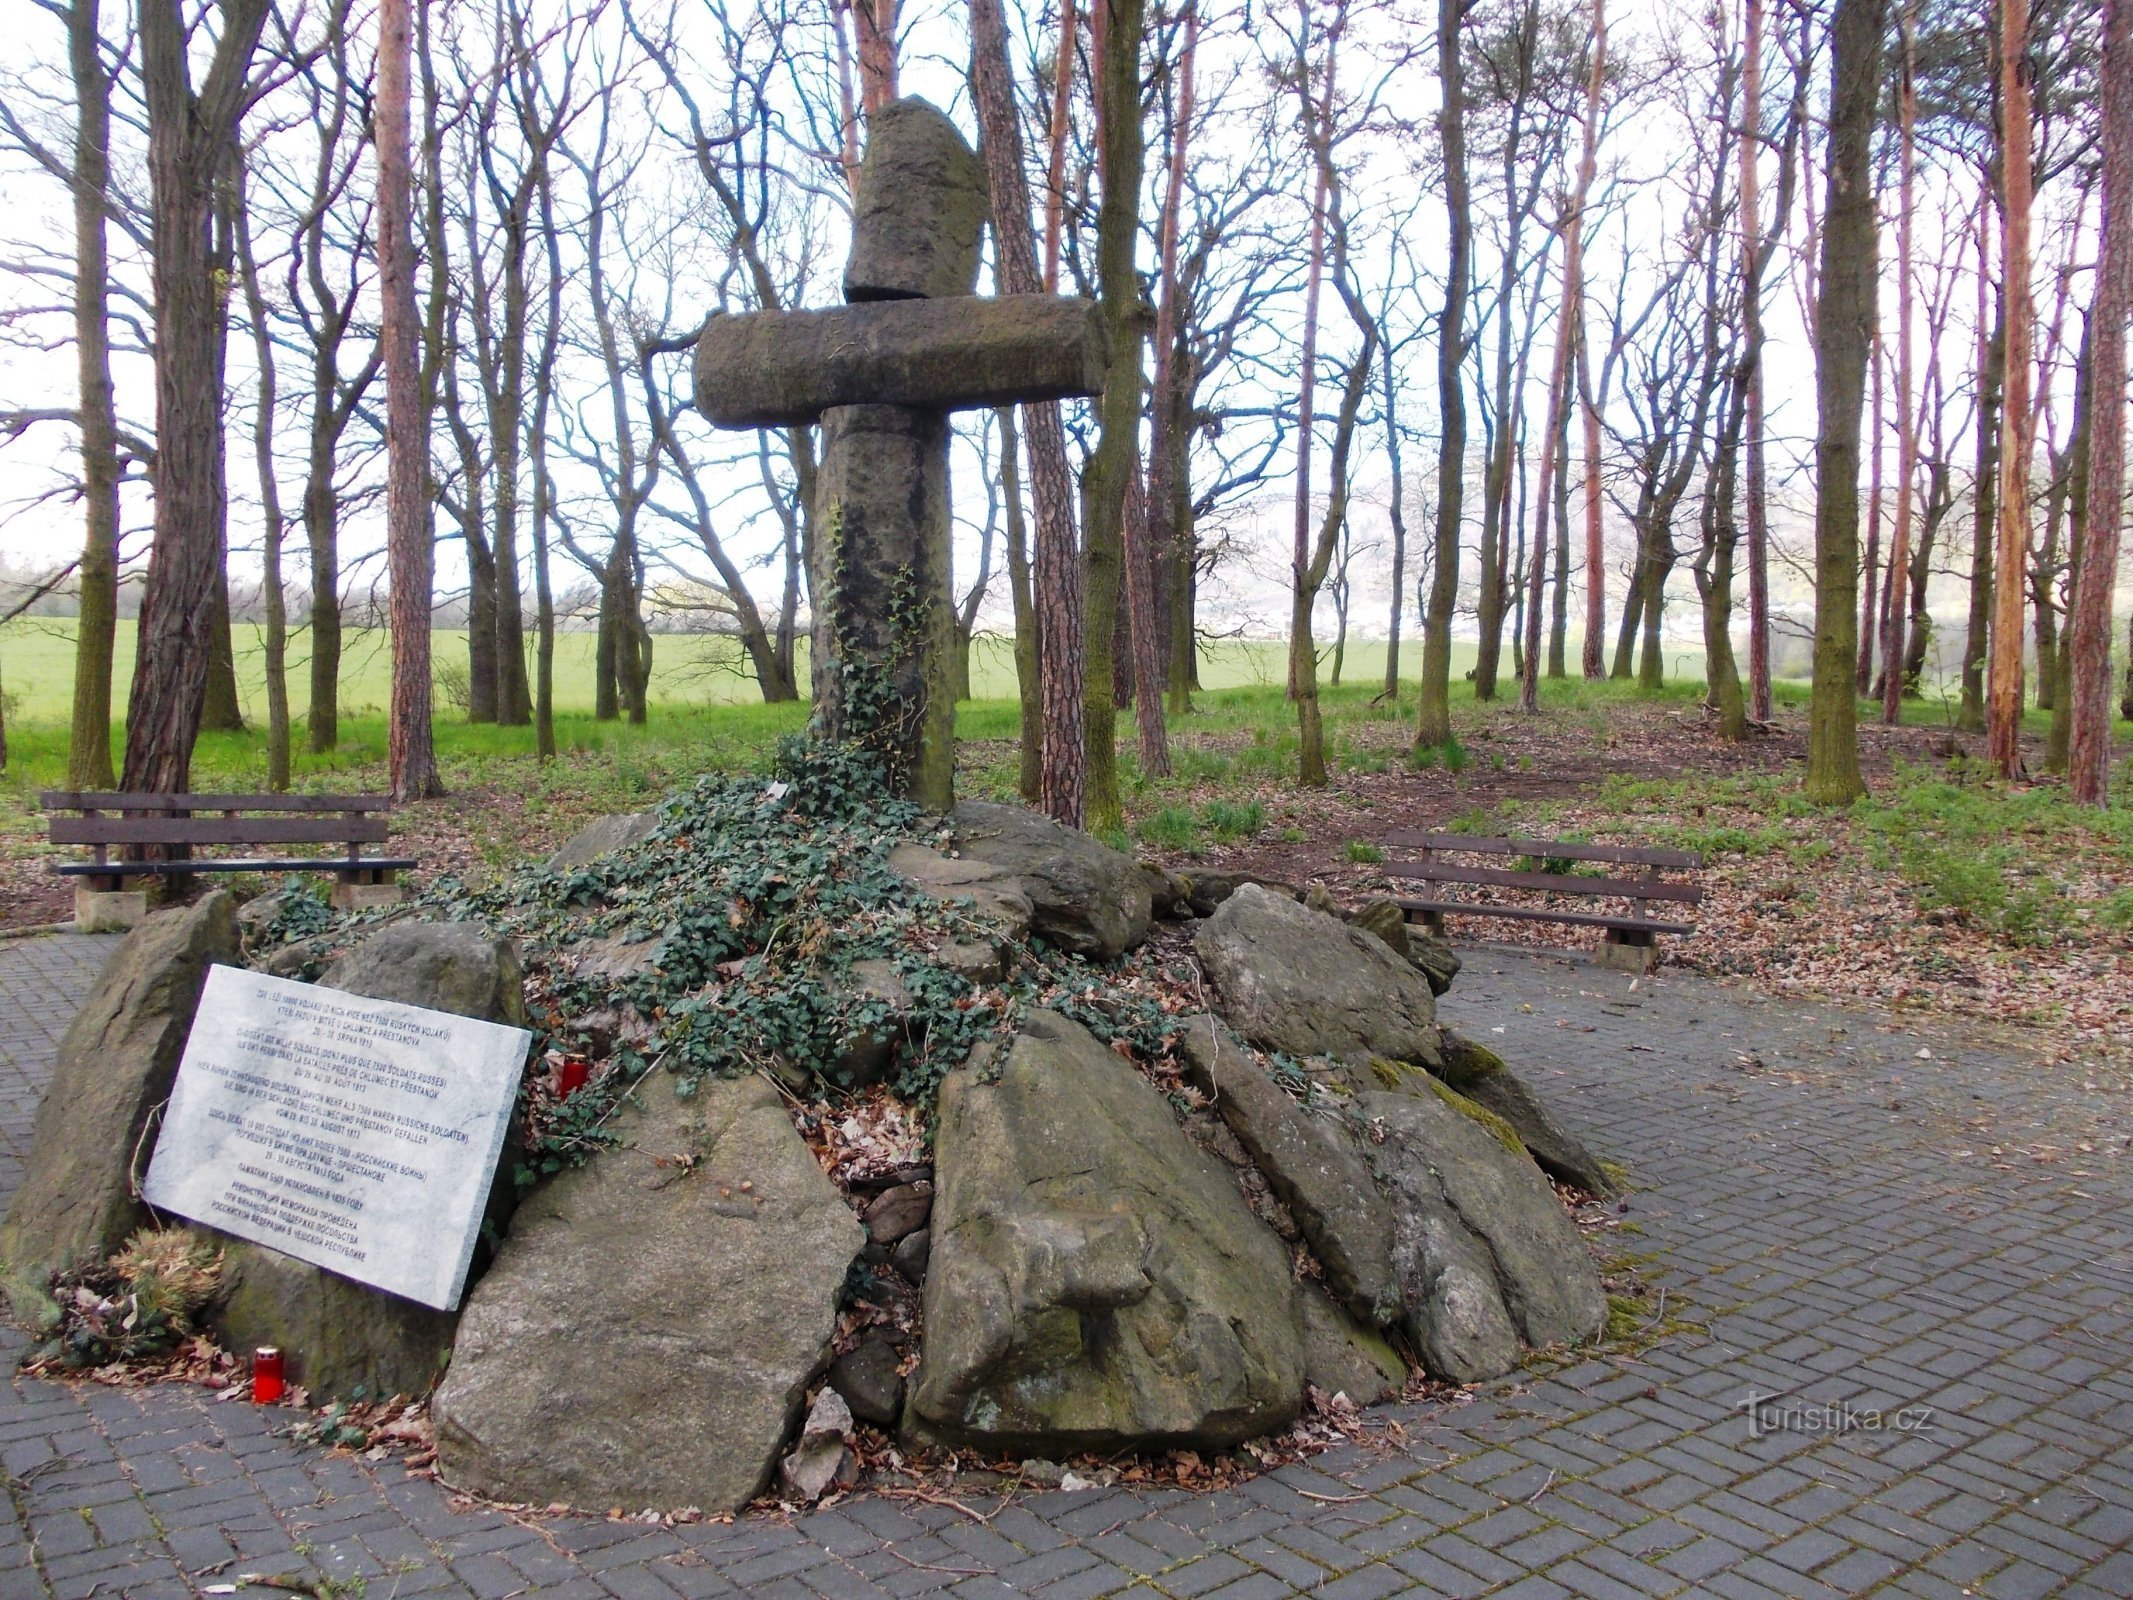 Hromadný hrob, v ktorom leží okolo 10 000 vojákov padlých v bitke r. 1813